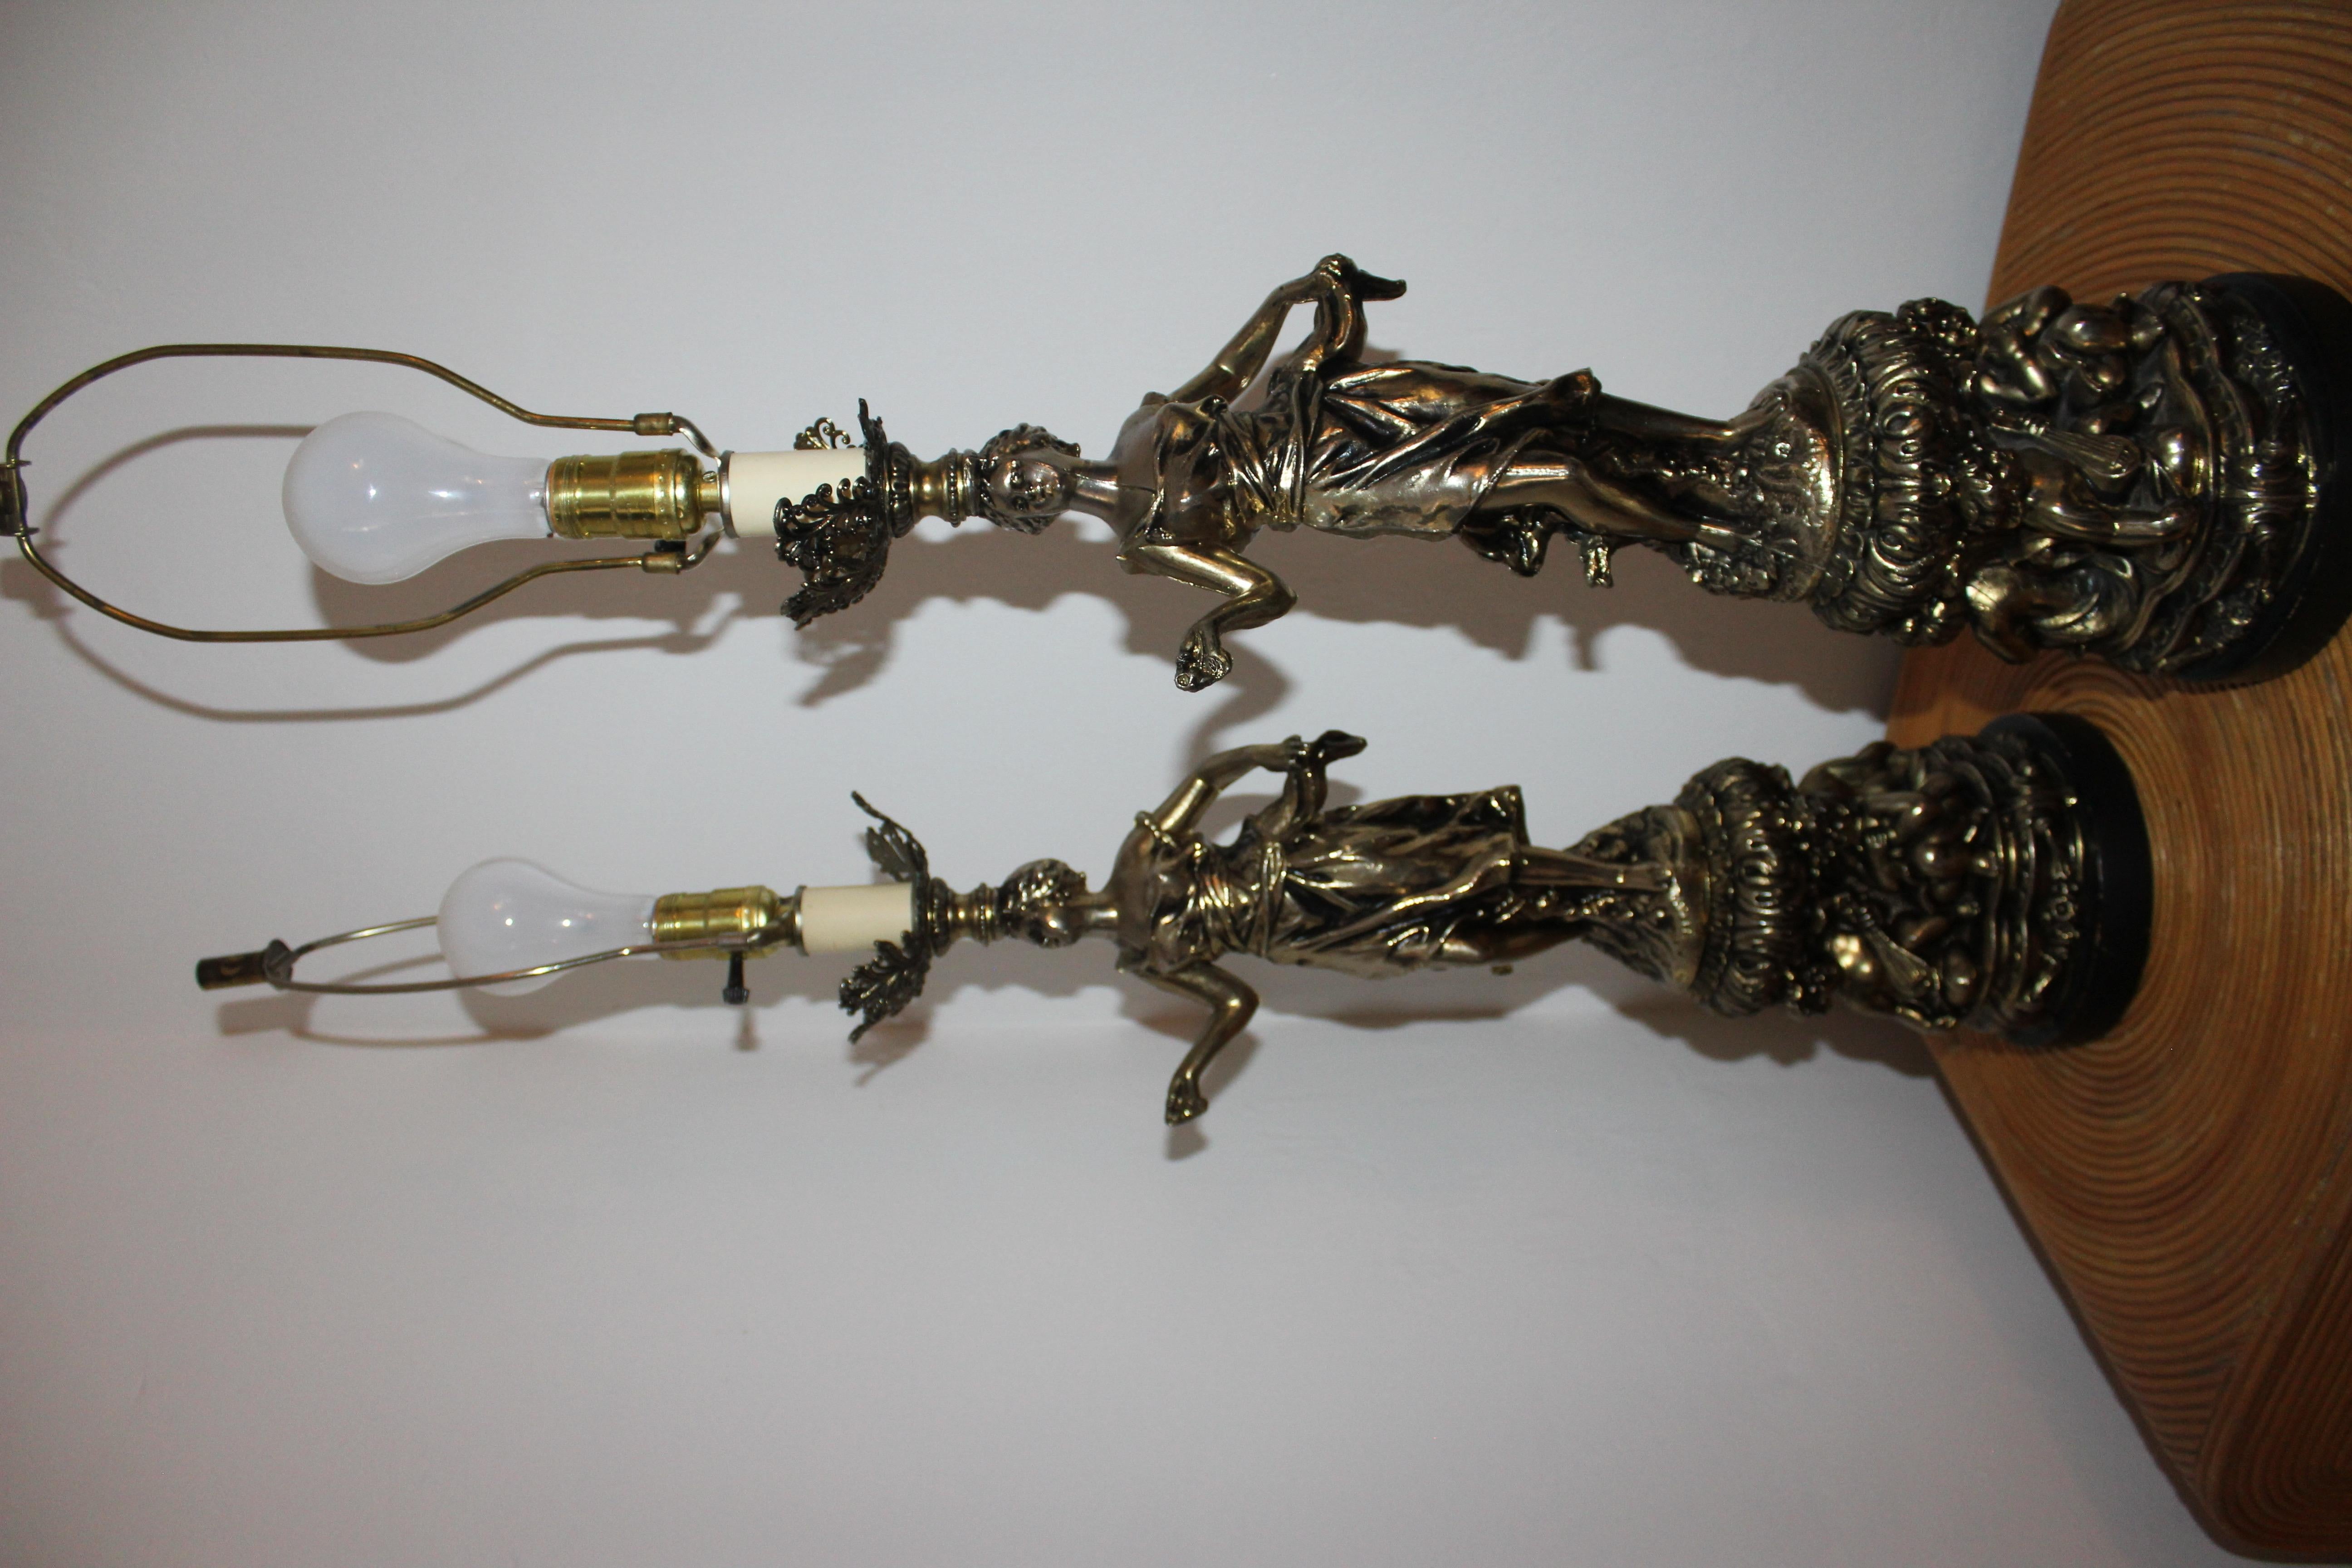 Très rare, superbe paire de lampes en métal coulé Art Nouveau avec dames dansantes et chérubins. Chaque figure debout représente une belle jeune femme, les bras à demi levés, les pieds suggérant un mouvement rythmique et une splendide posture